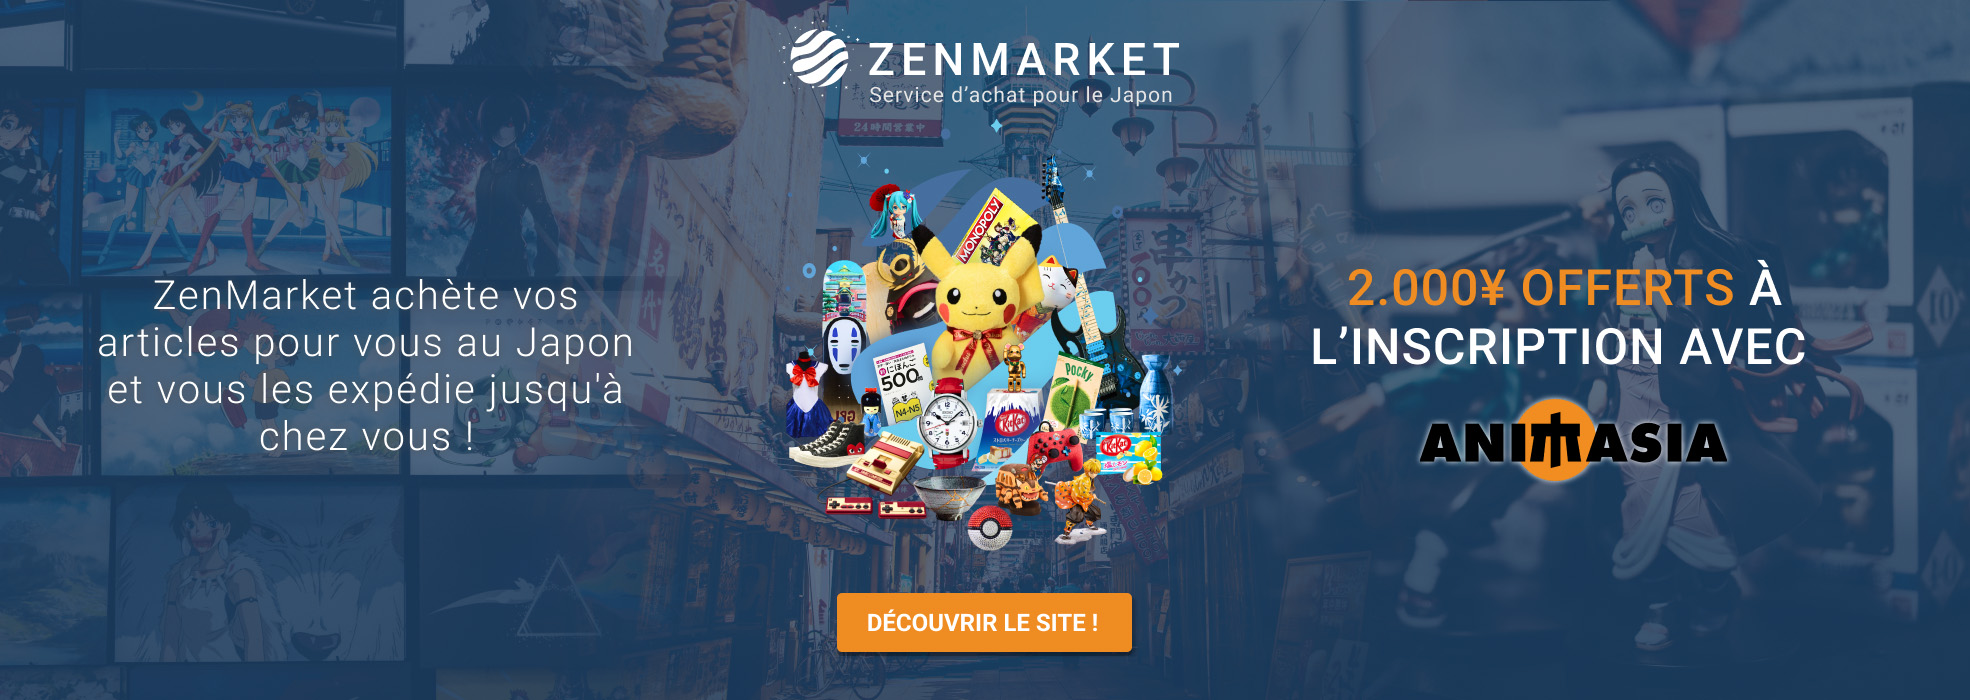 animasia-page-accueil-Zenmarket